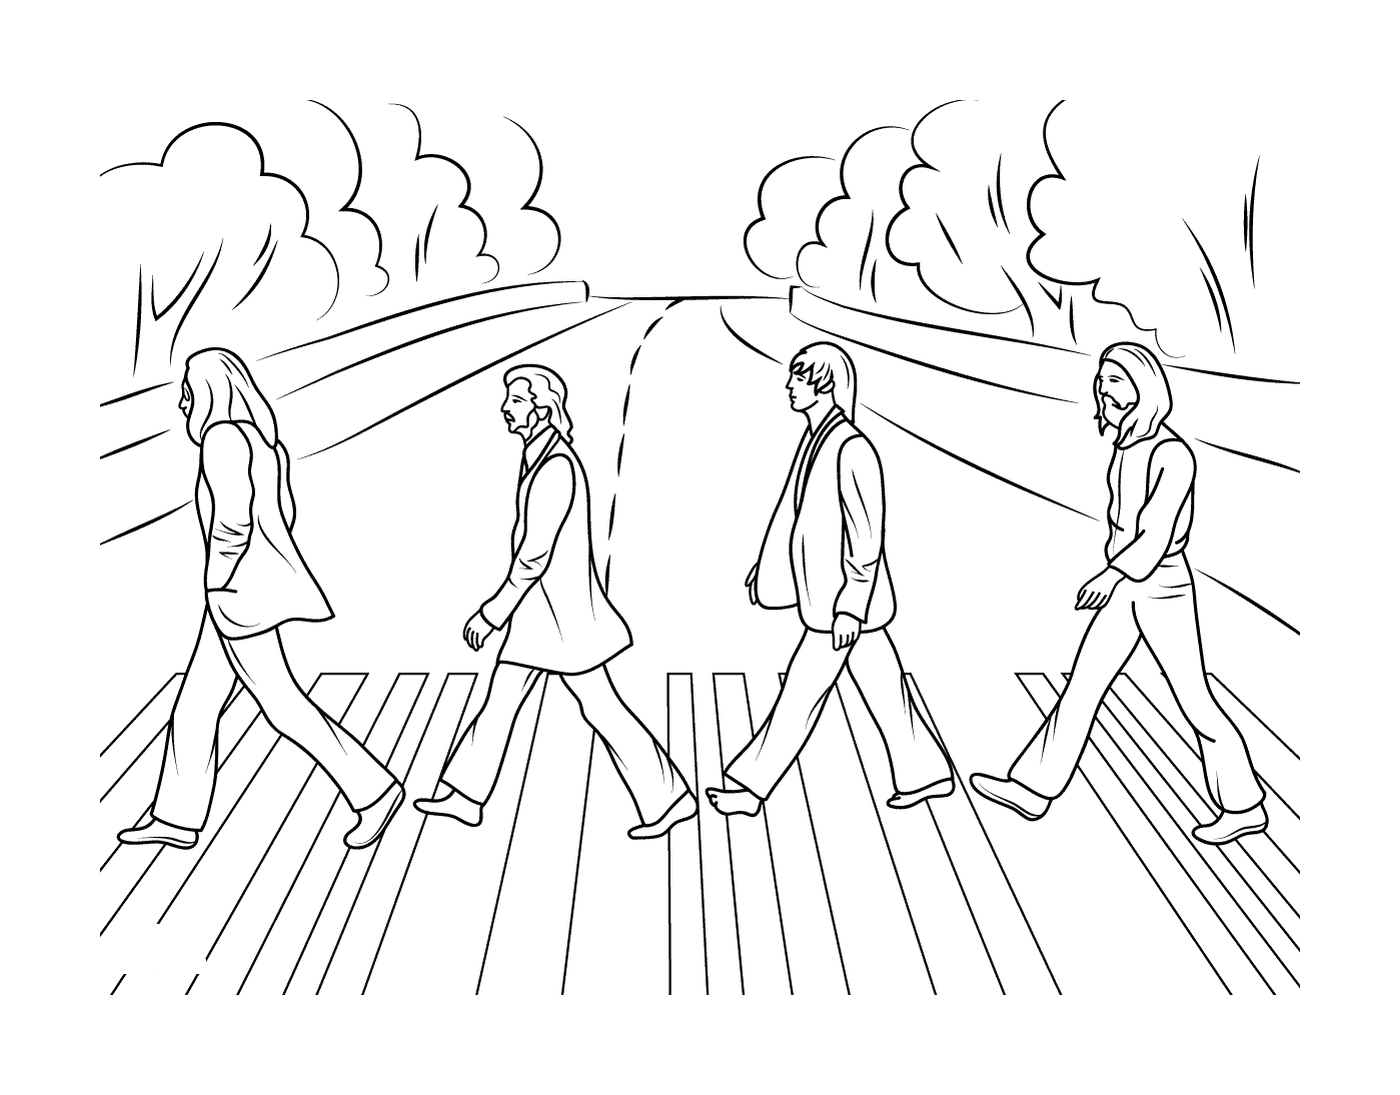  Группа людей пересекает улицу 